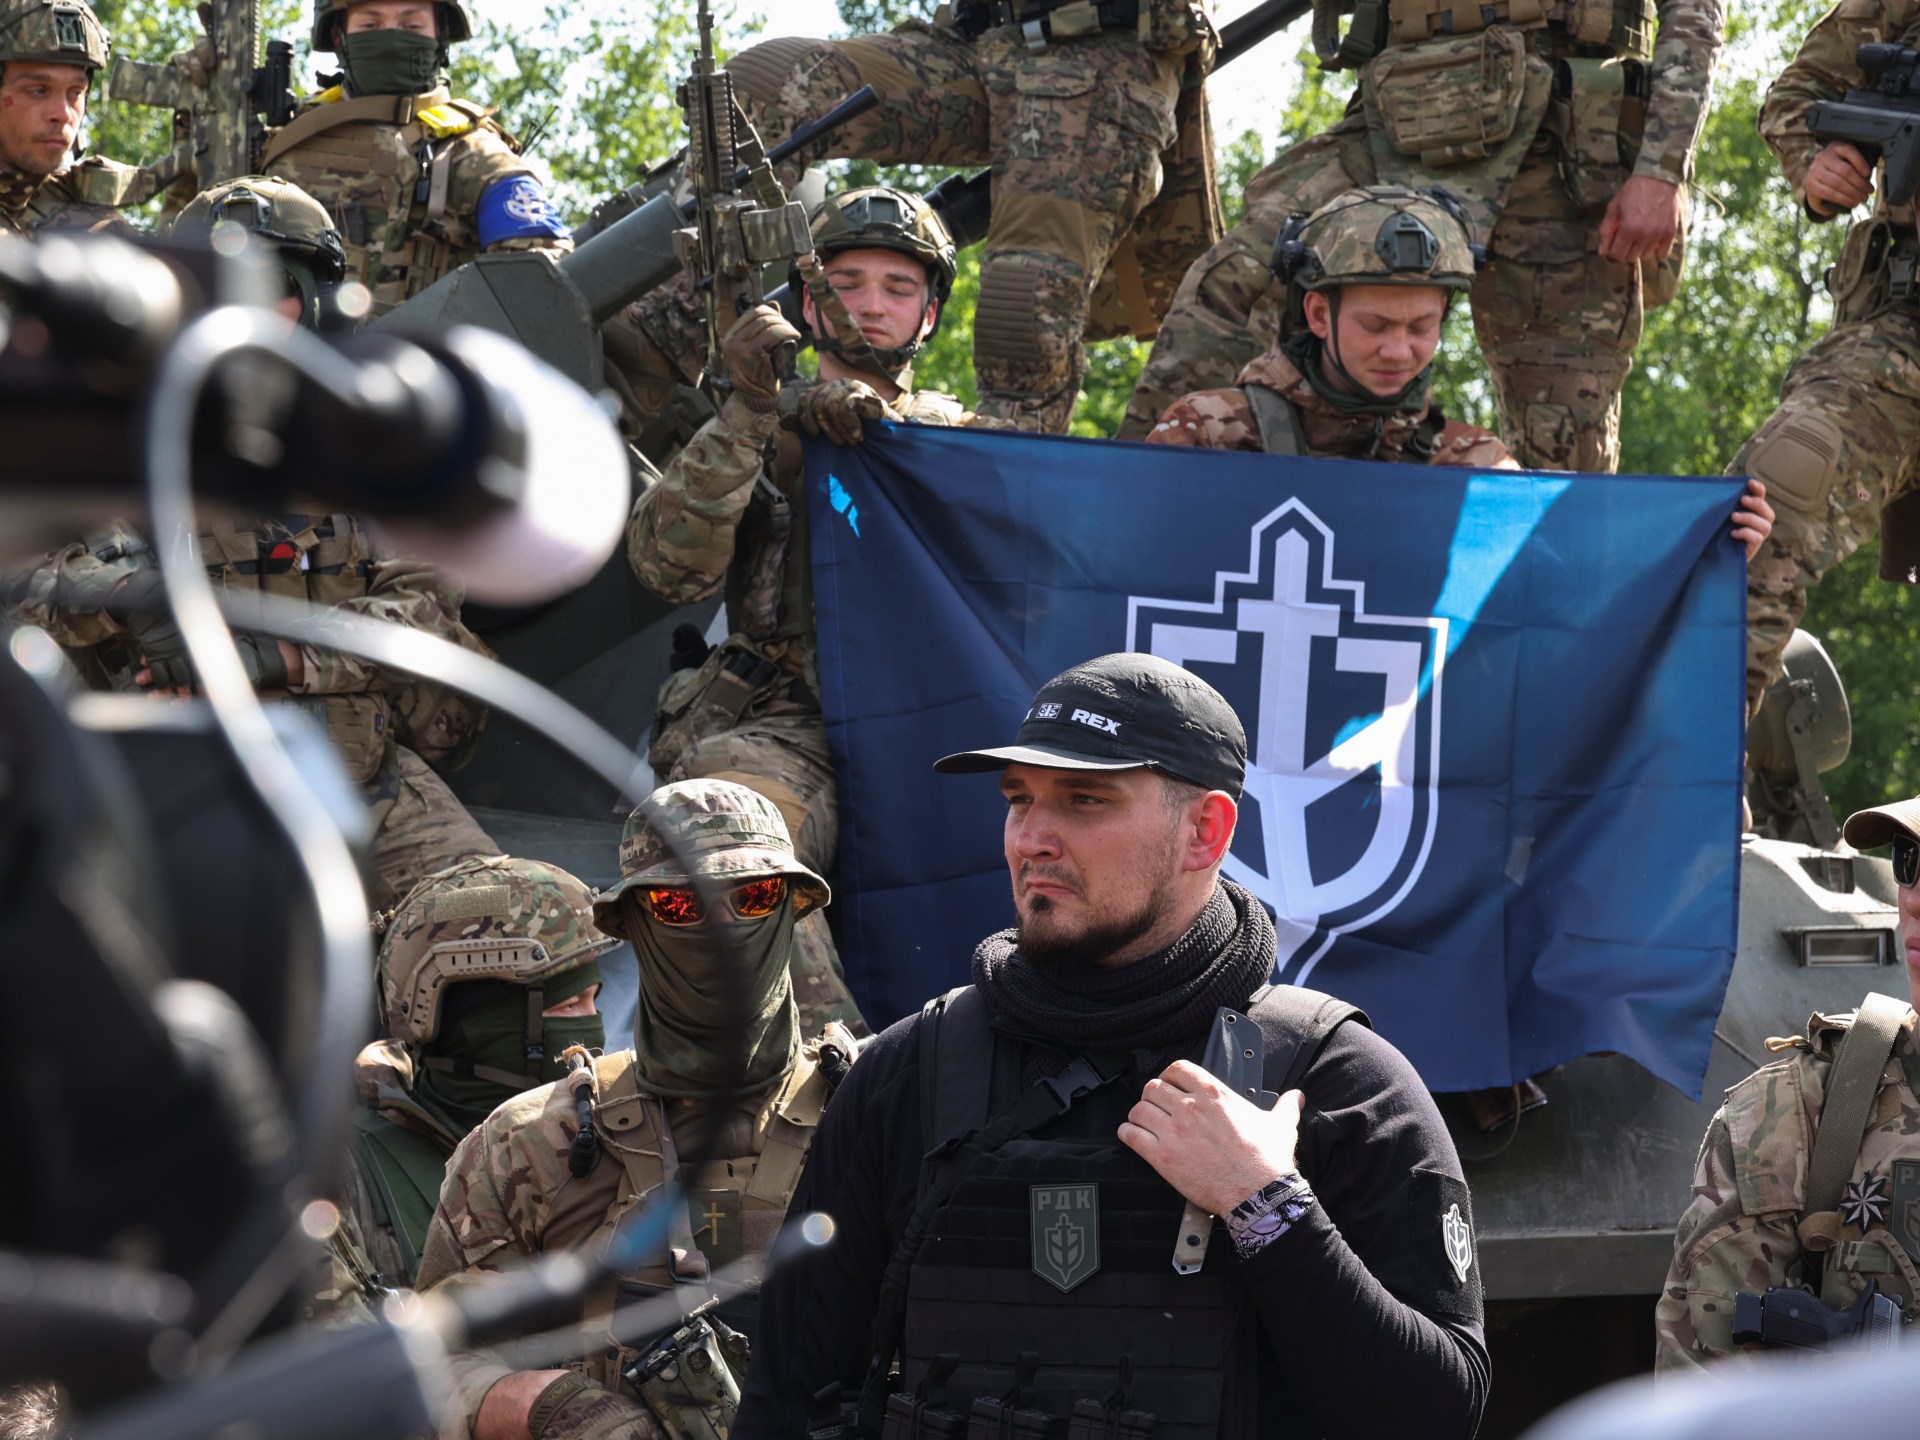 proukraińscy bojownicy atakują południową Rosję;  Oferta handlu jeńcami wojennymi |  Wiadomości o wojnie między Rosją a Ukrainą